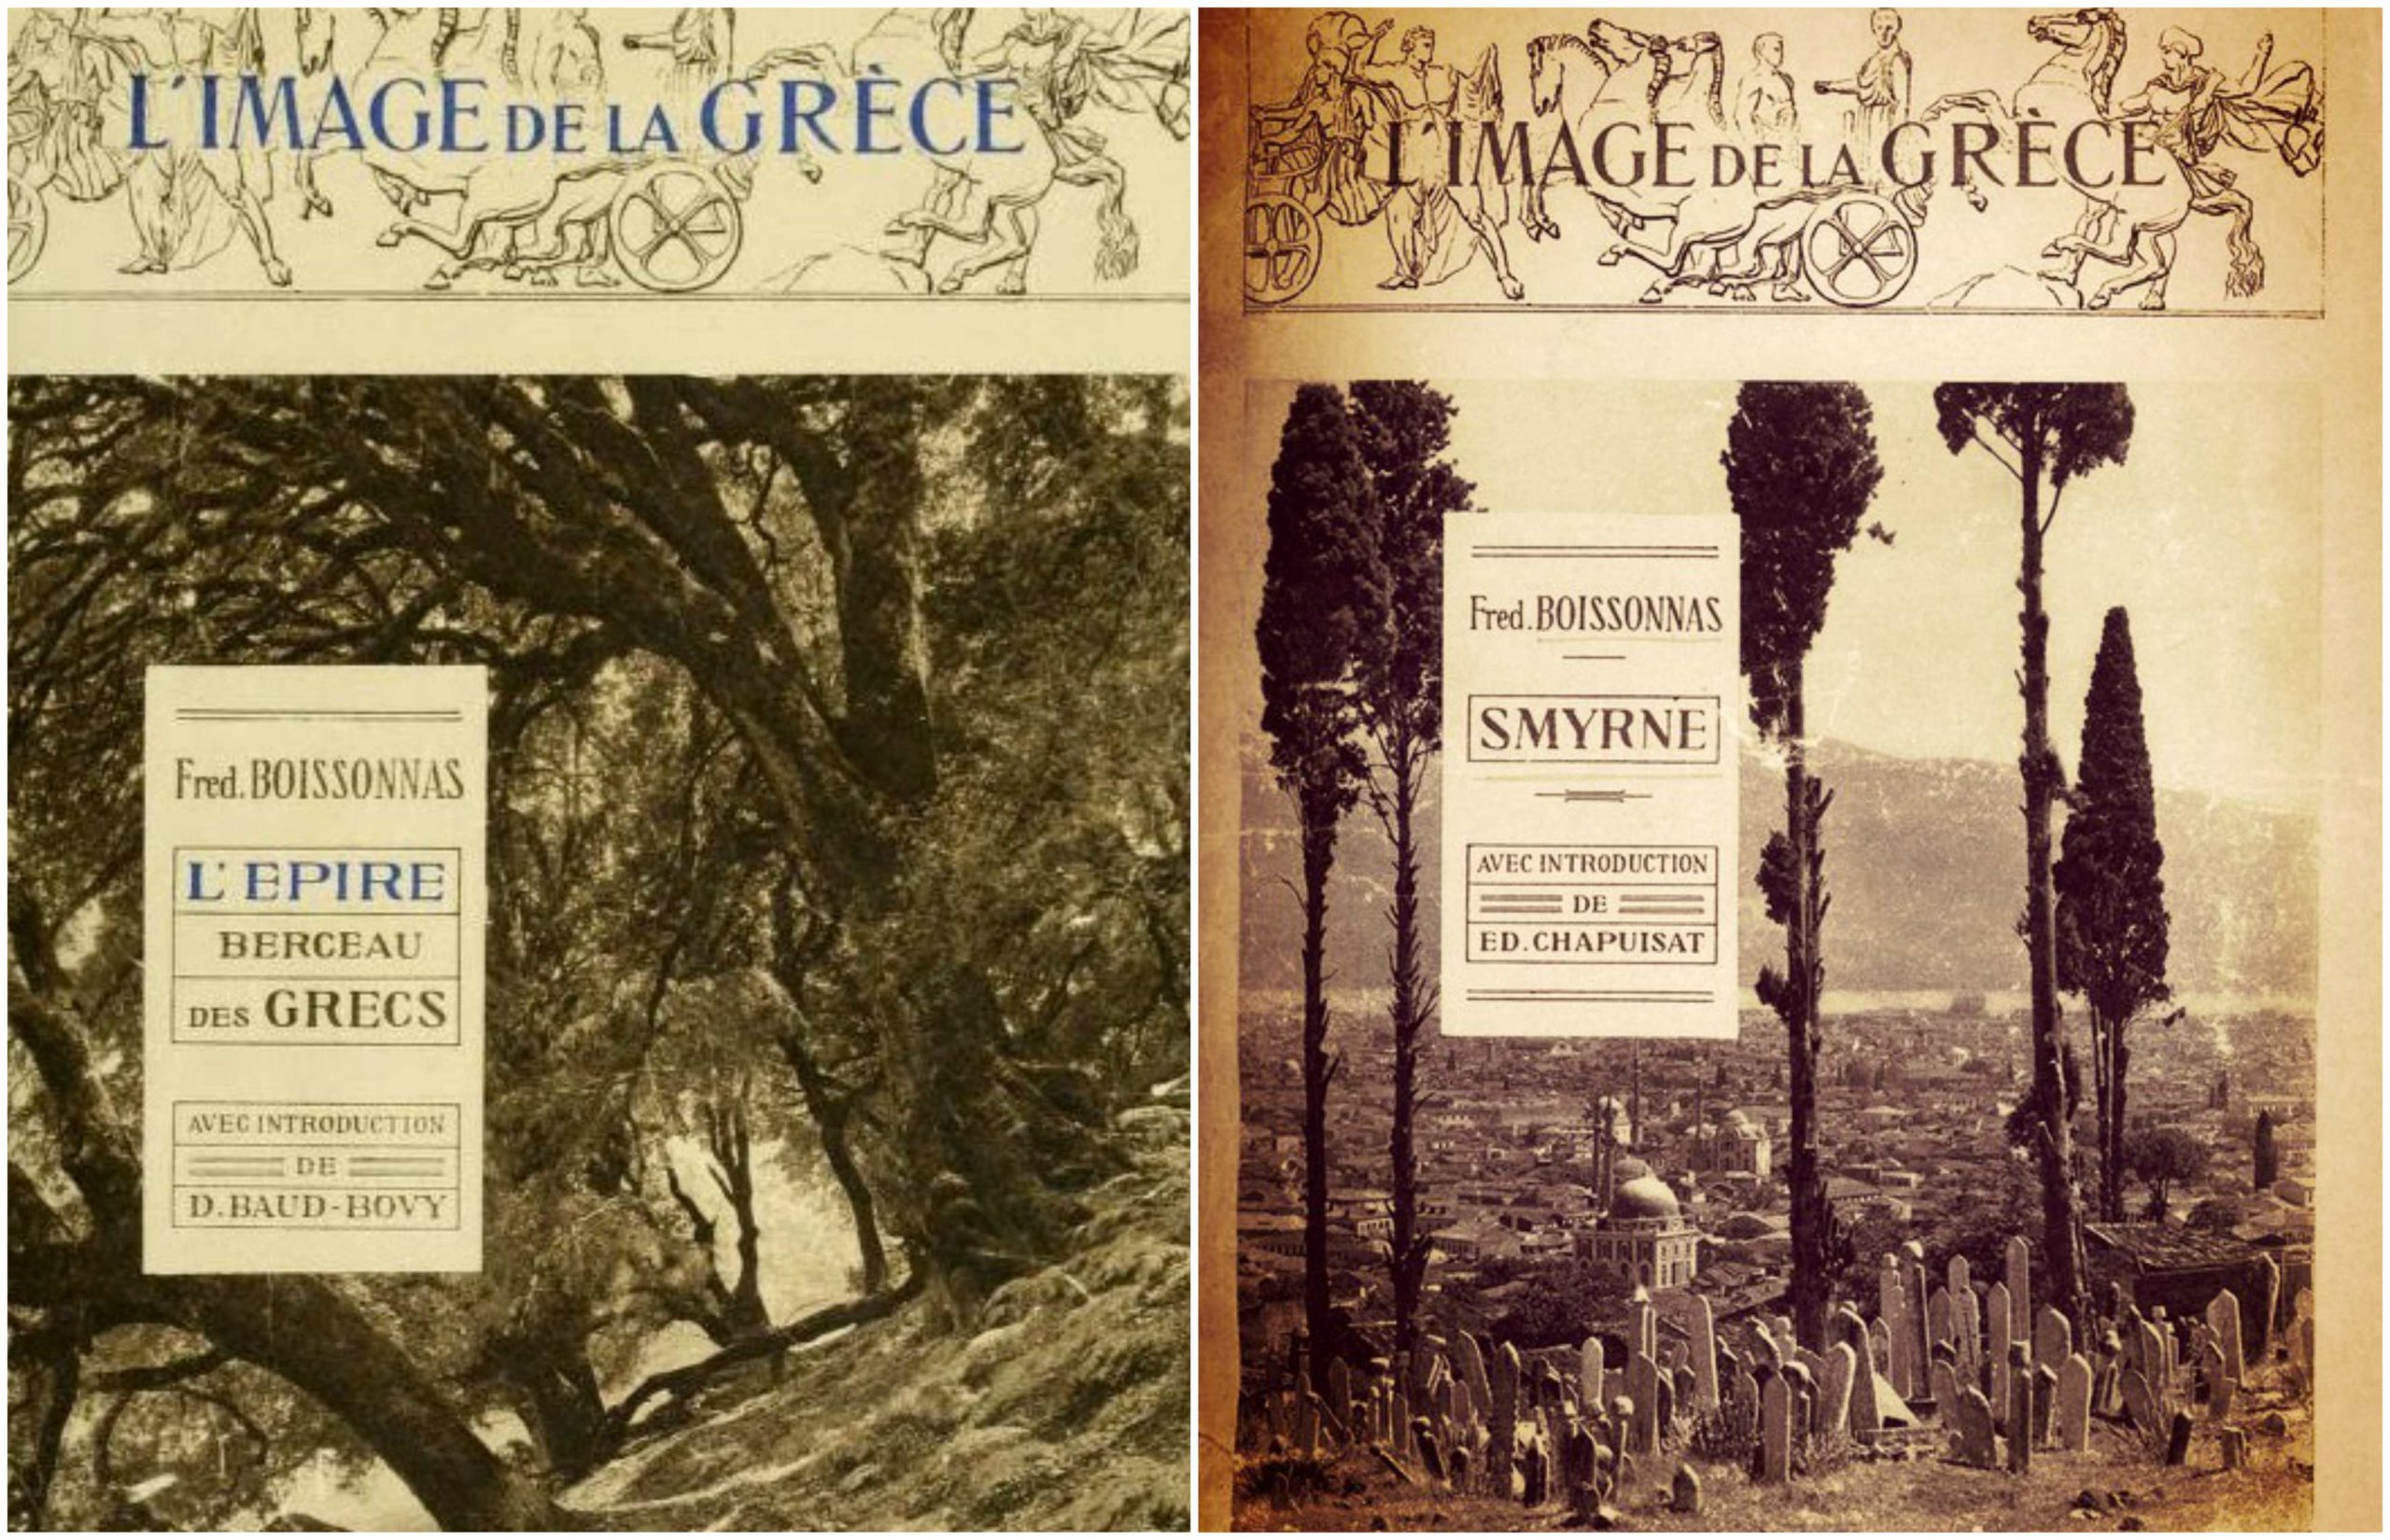 image de la grece collage